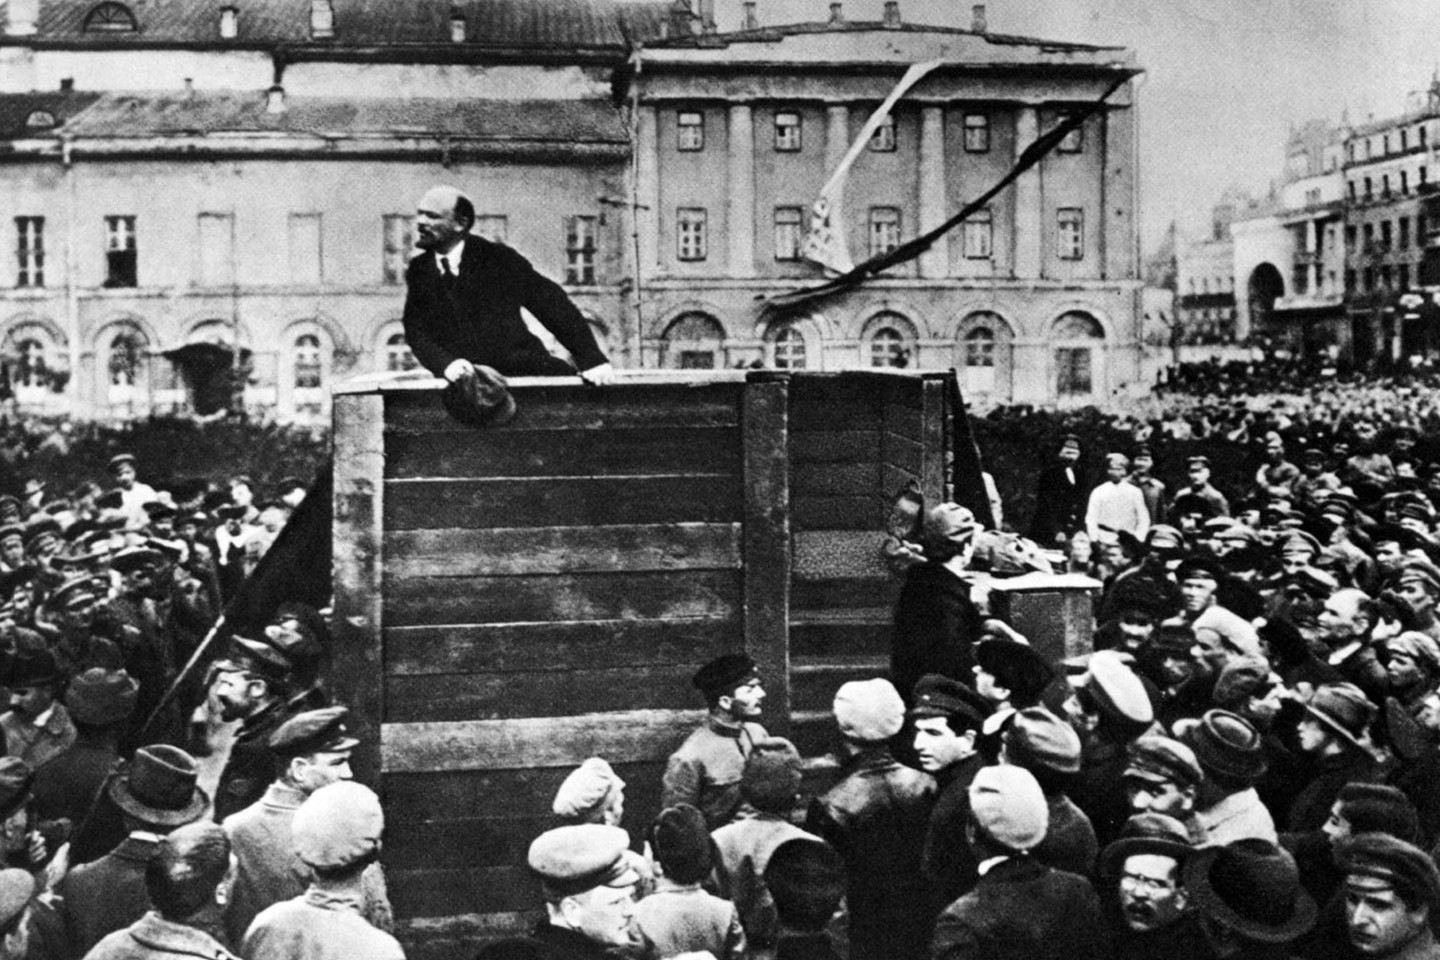 Владимир Ленин во время выступления на Театральной площади в Москве, 1920 год.
Григорий Гольдштейн